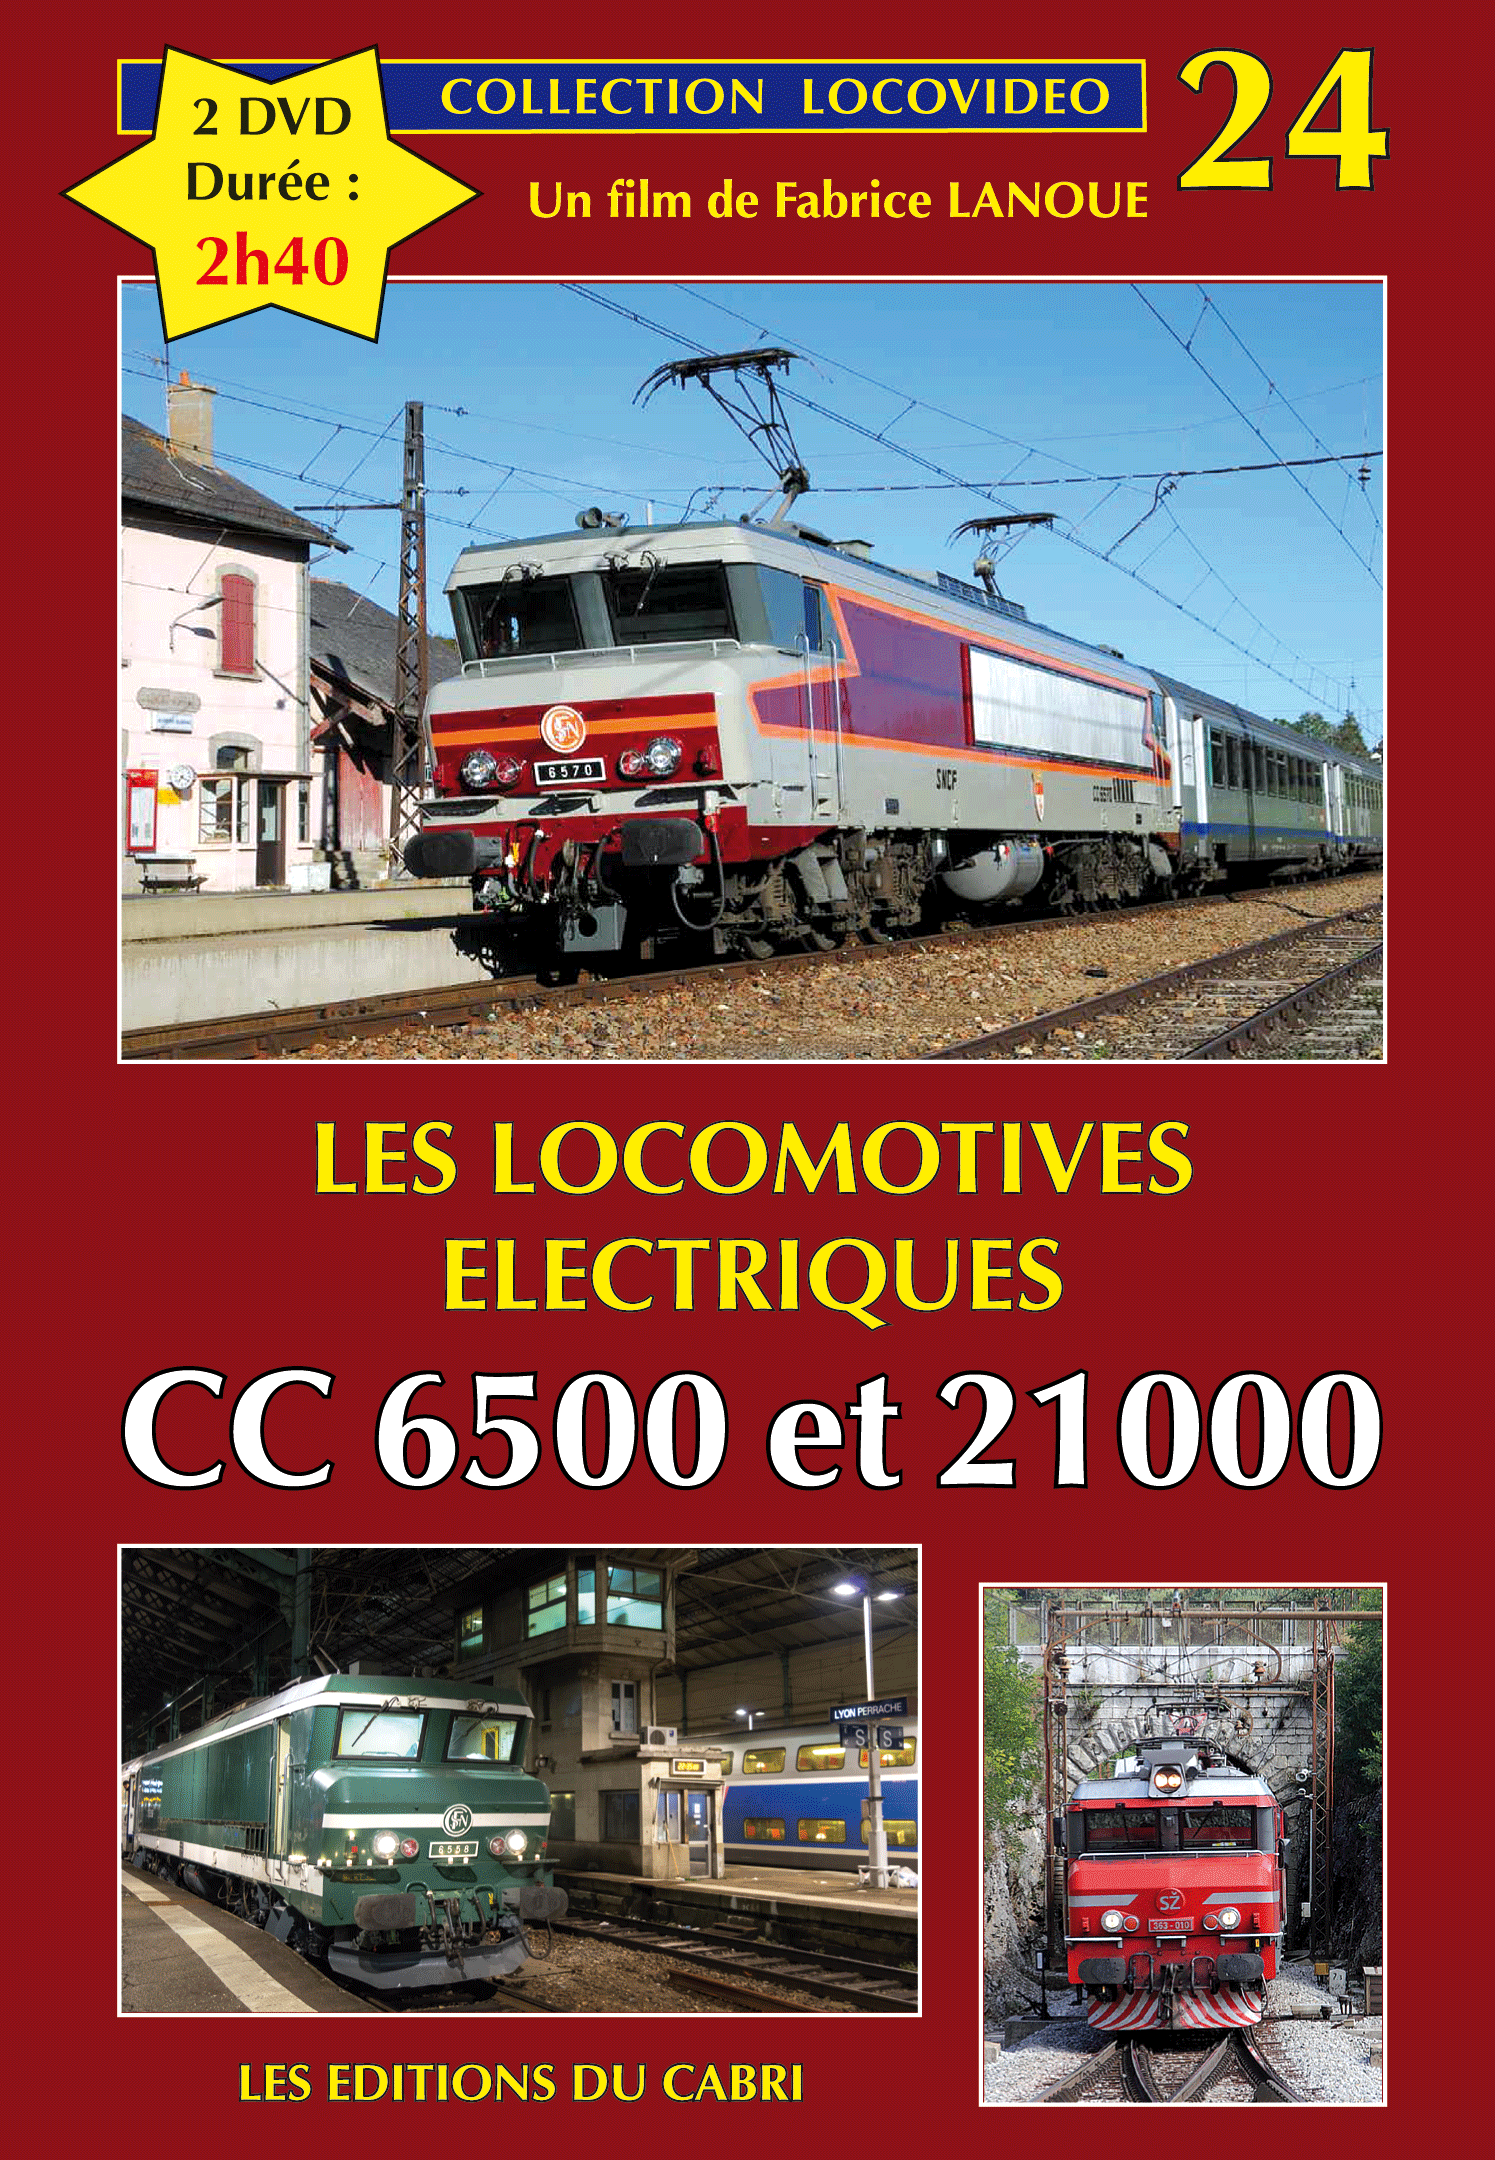 DVD Locovidéo n° 24 : Les locomotives électriques CC-6500 et CC-21000